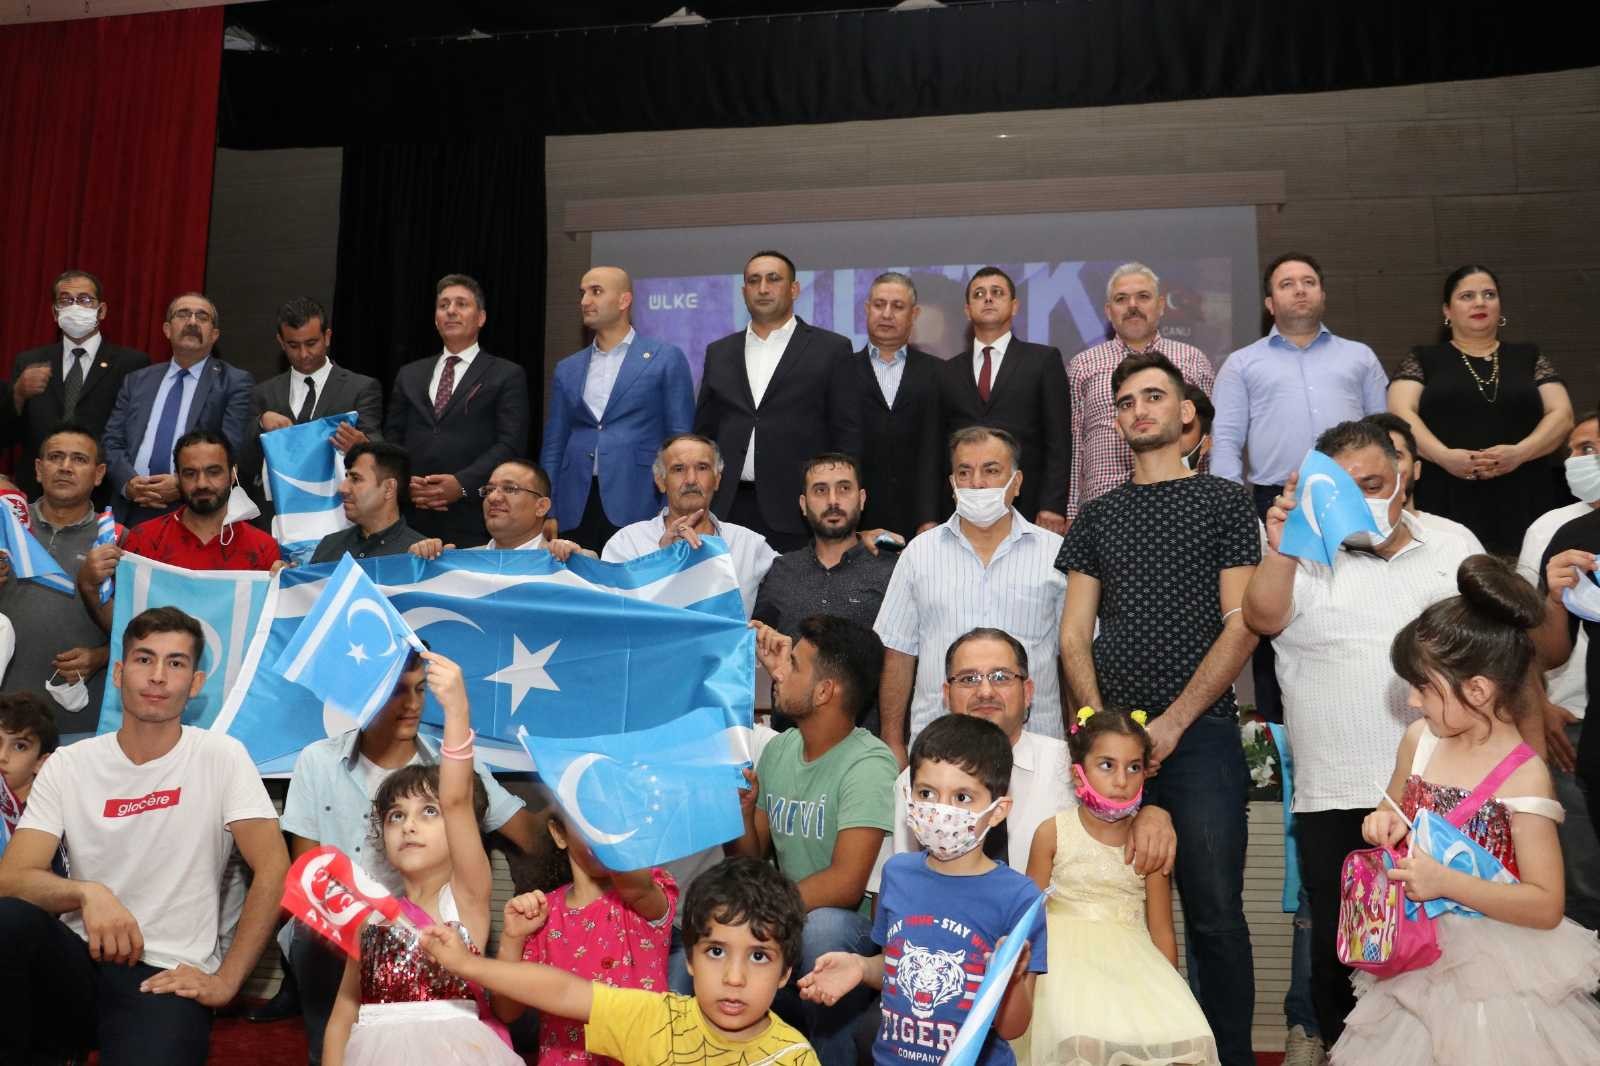 Toroslar Belediyesinden “Irak Türkmenlerinin Durumu ve Olası Gelişmeler” konferansı